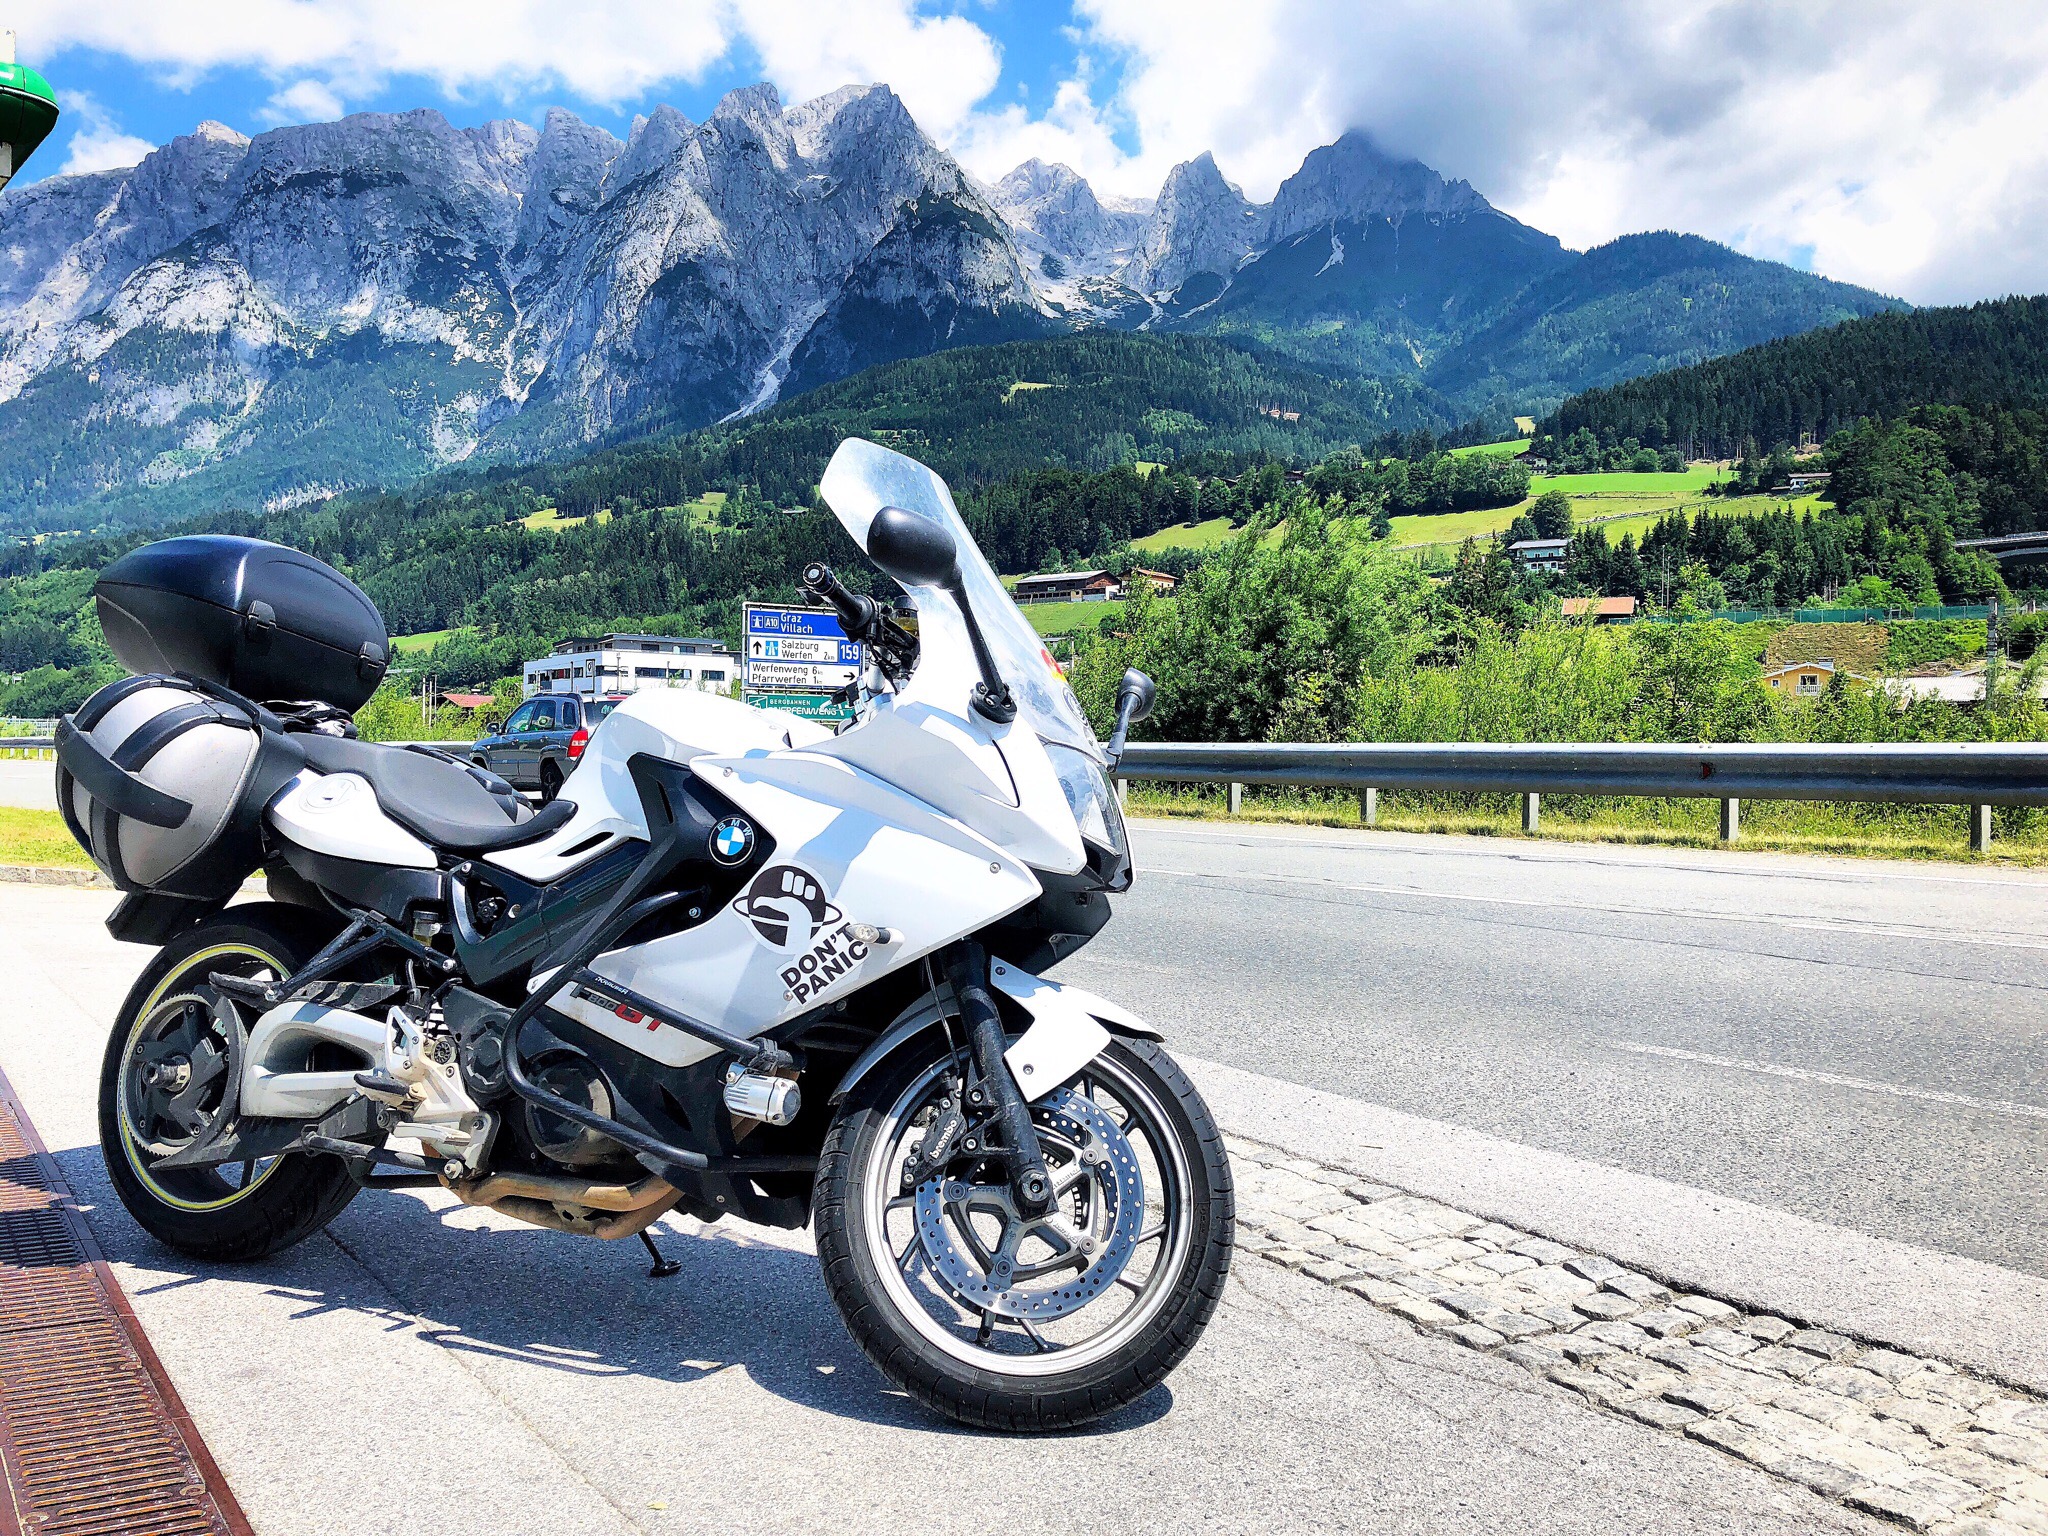 на мотоцикле по Австрии интересные места, дороги в Австрии, бесплатные дороги в Австрии, на мотоцикле по Альпам, на мотоцикле через Альпы, где остановиться в Австрии с мотоциклом, где остановиться в Австрии дешево, где переночевать в Австрии в Альпах дешево